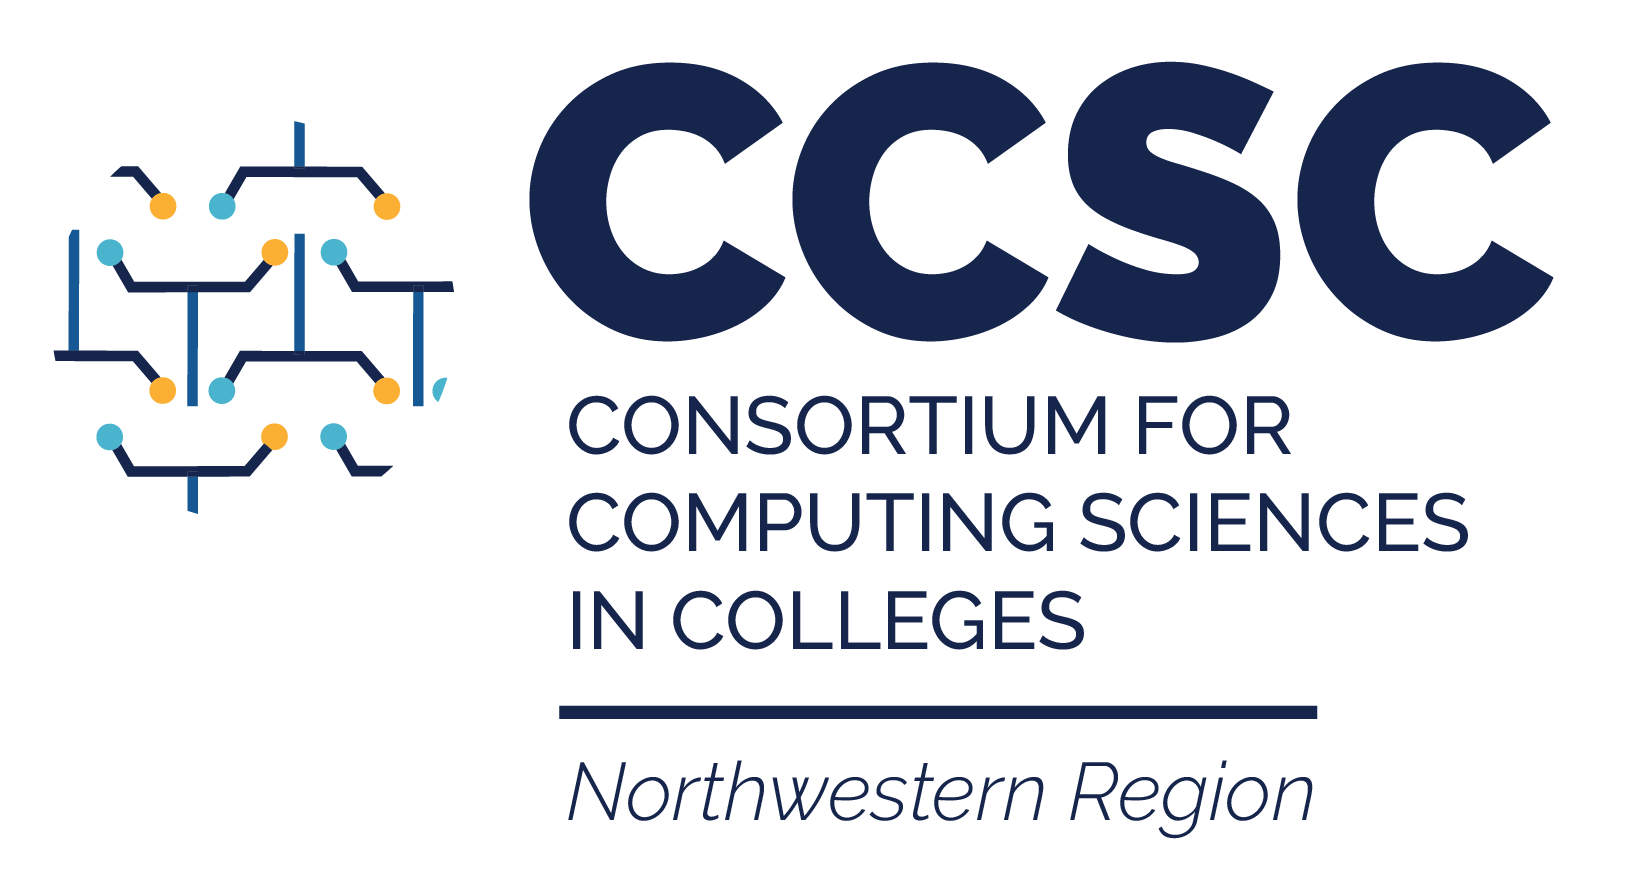 Consortium for Computing Sciences in Colleges: Northwestern Region